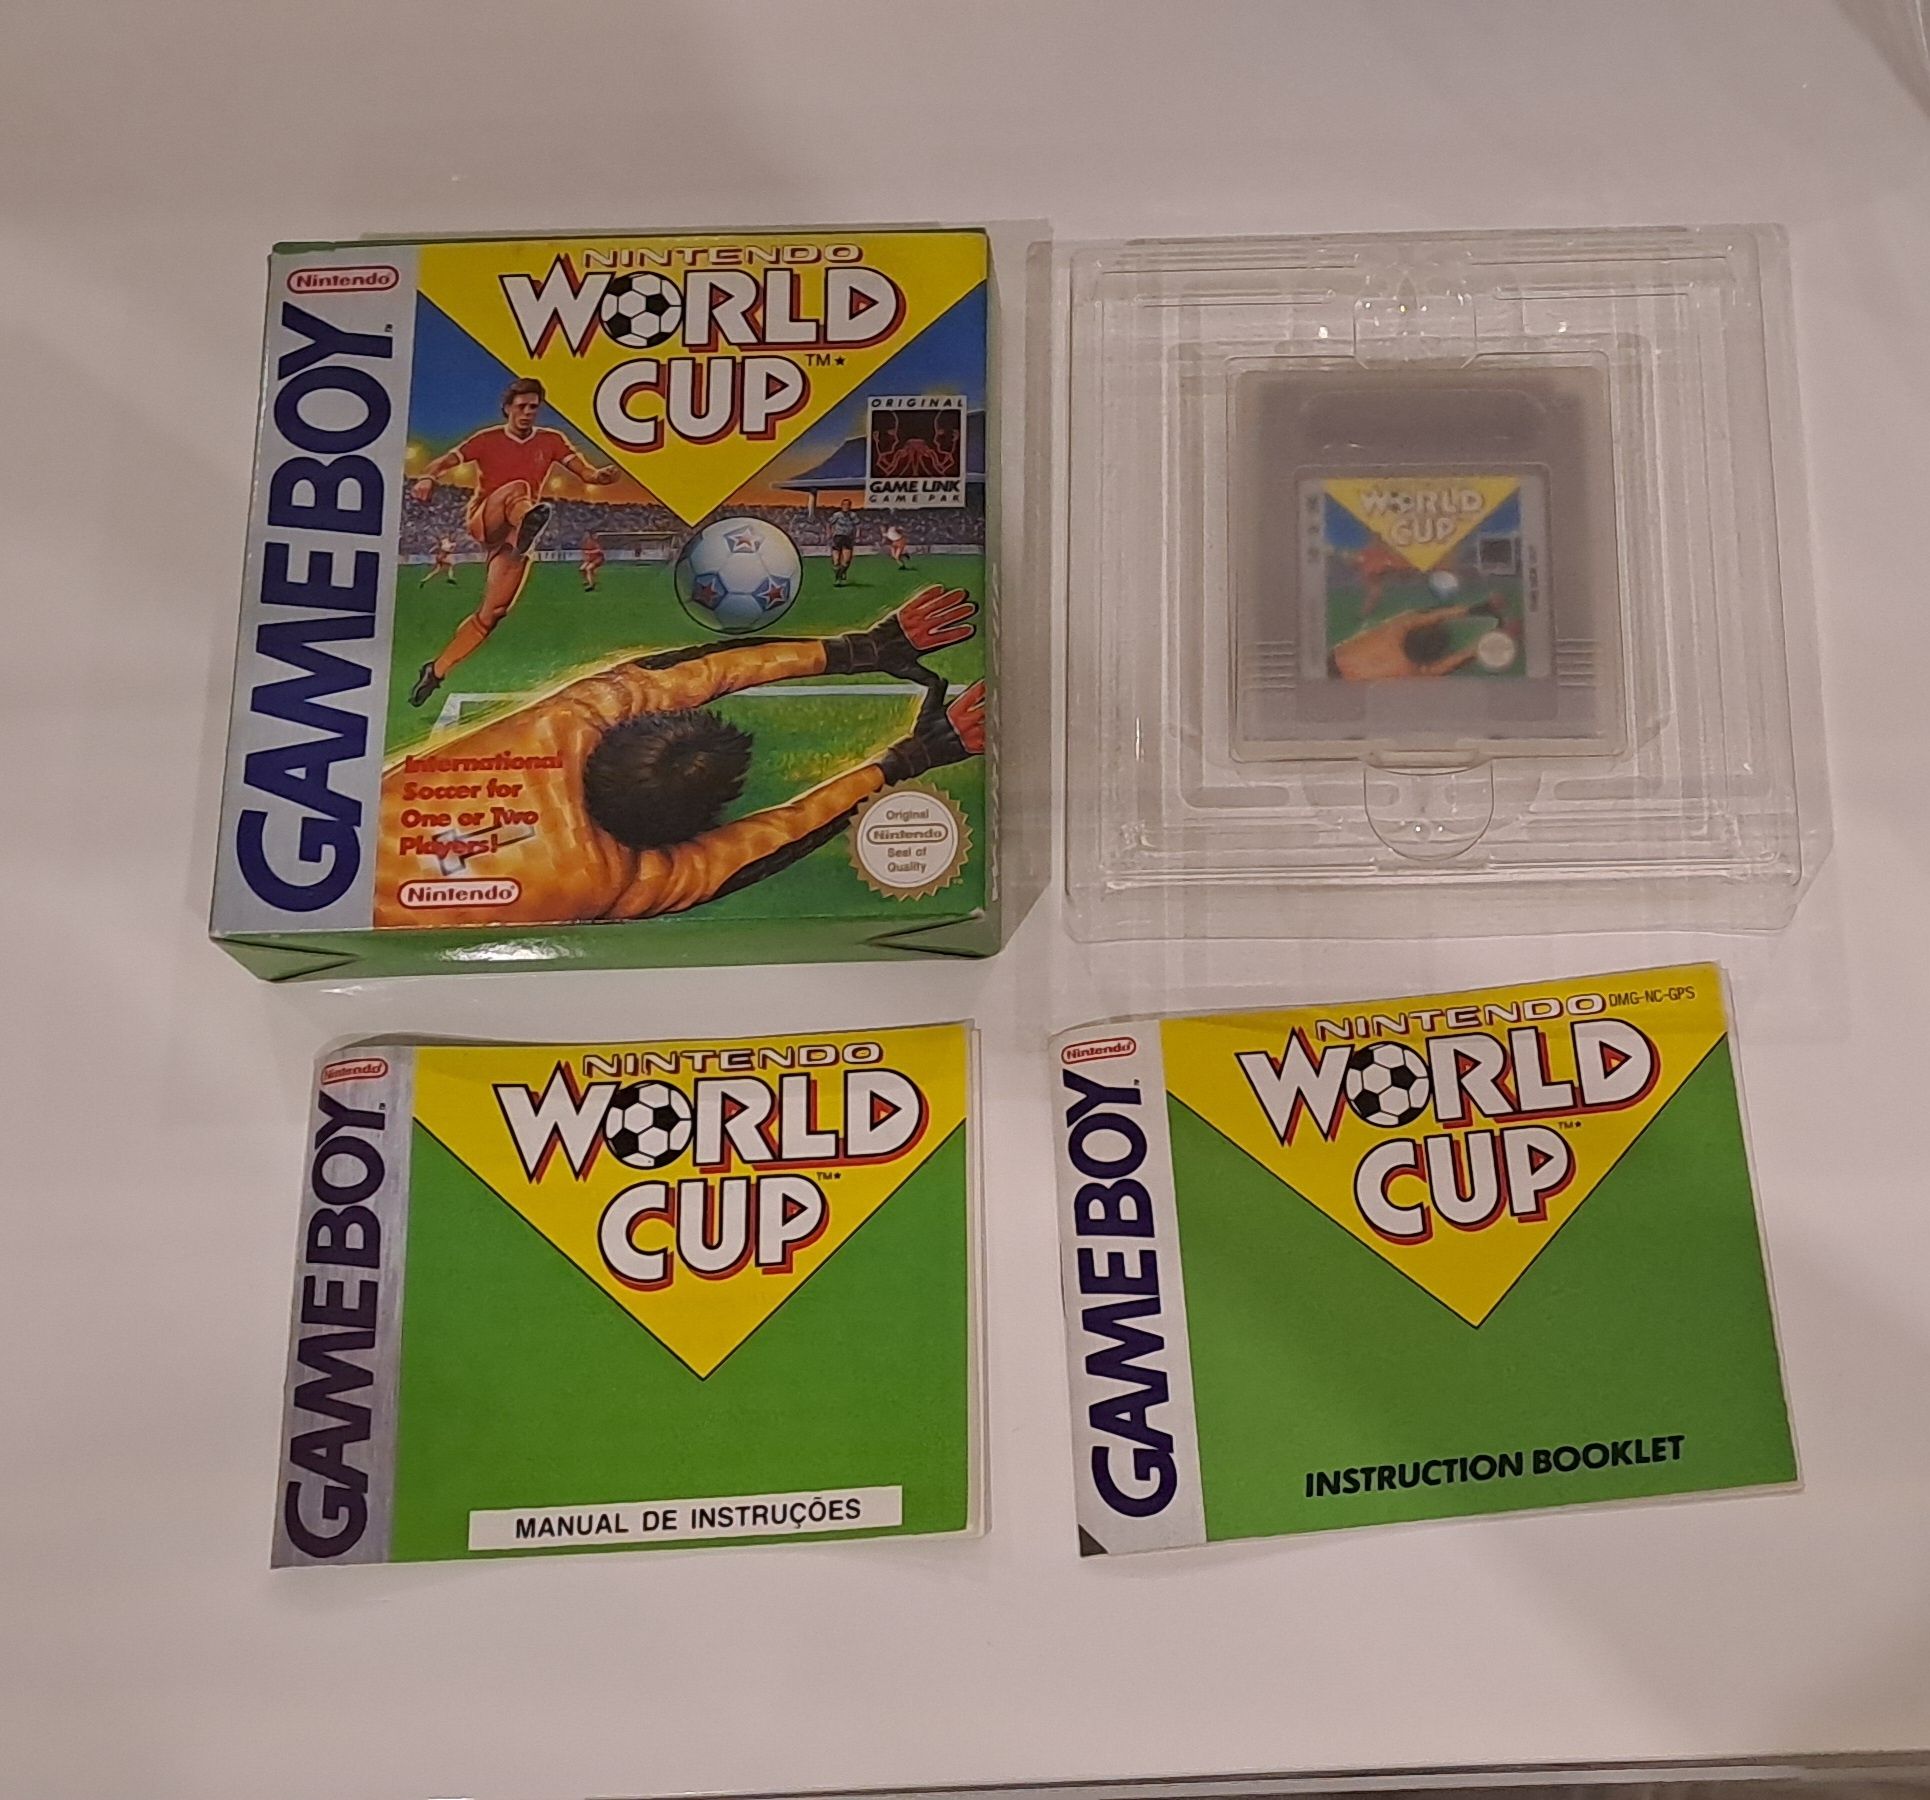 World Cup Game Boy (CIB)